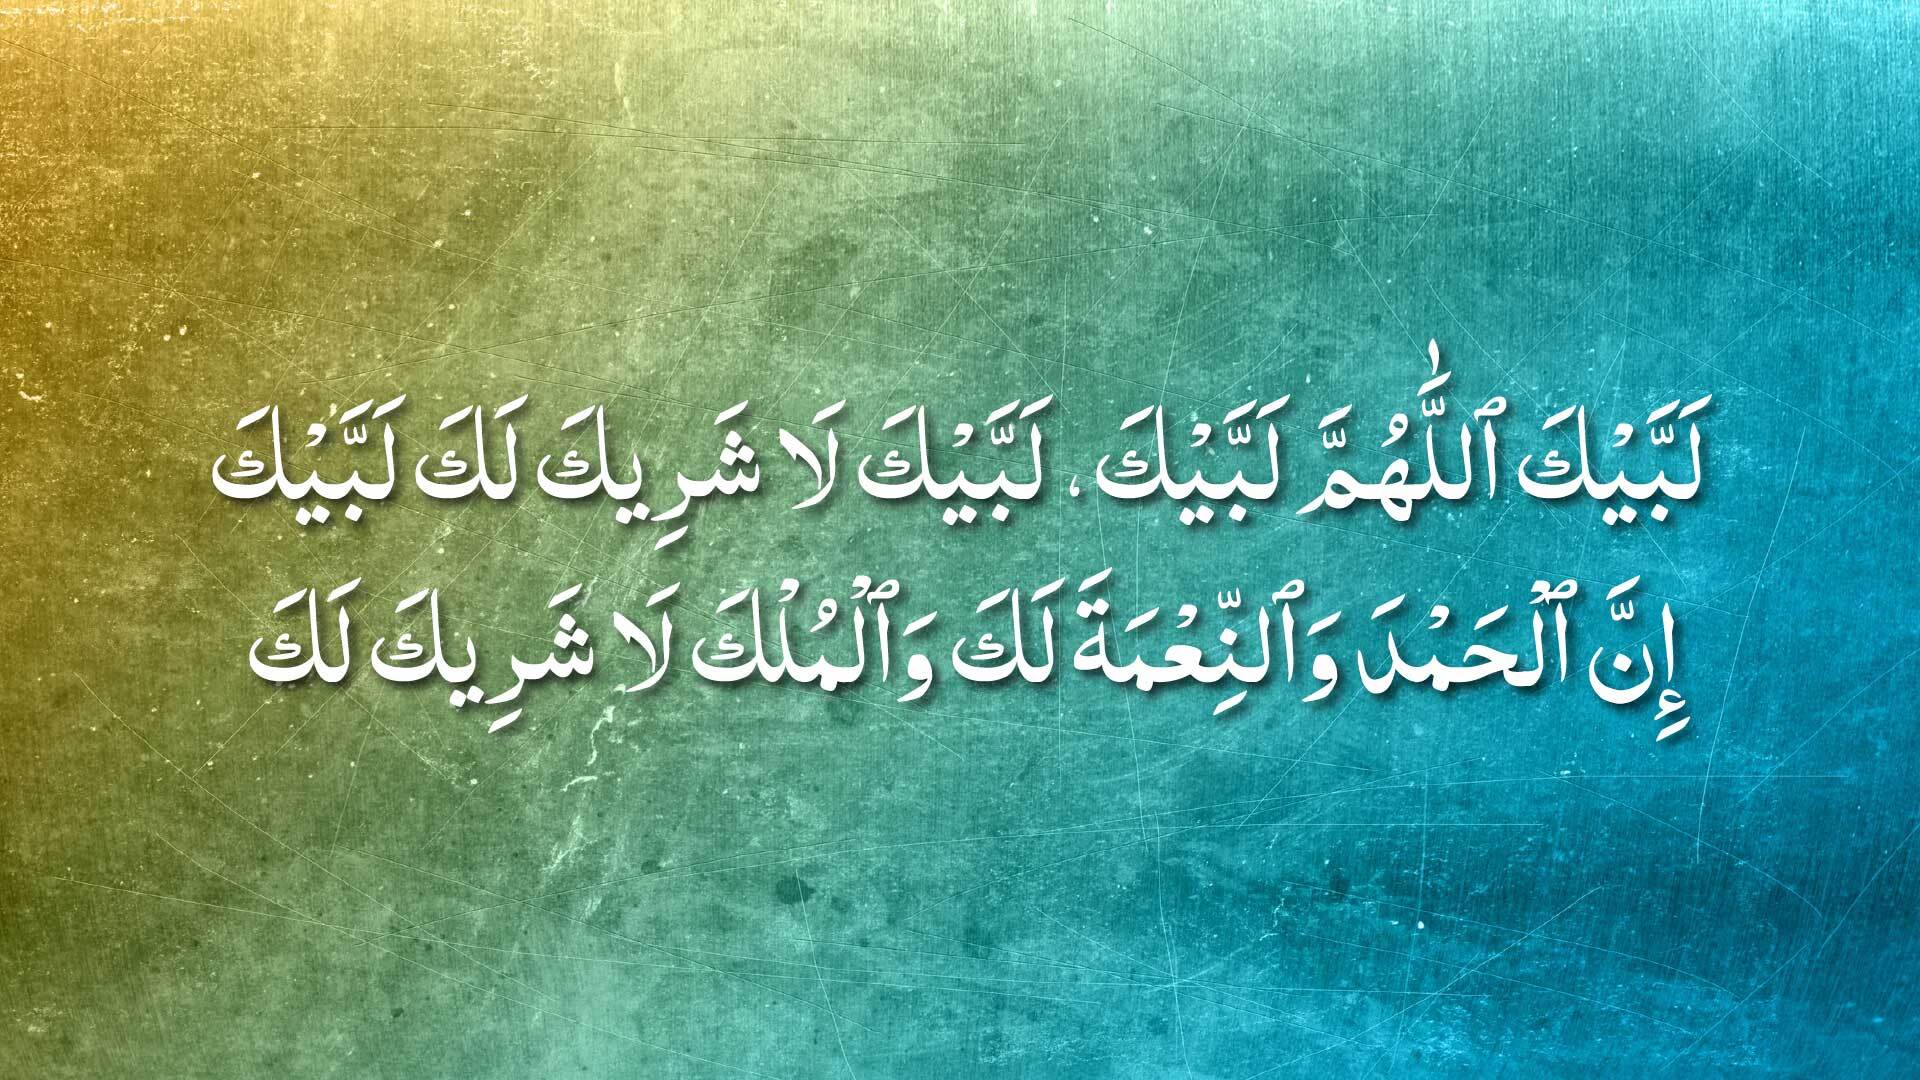 Talbih, Beloved to Allah